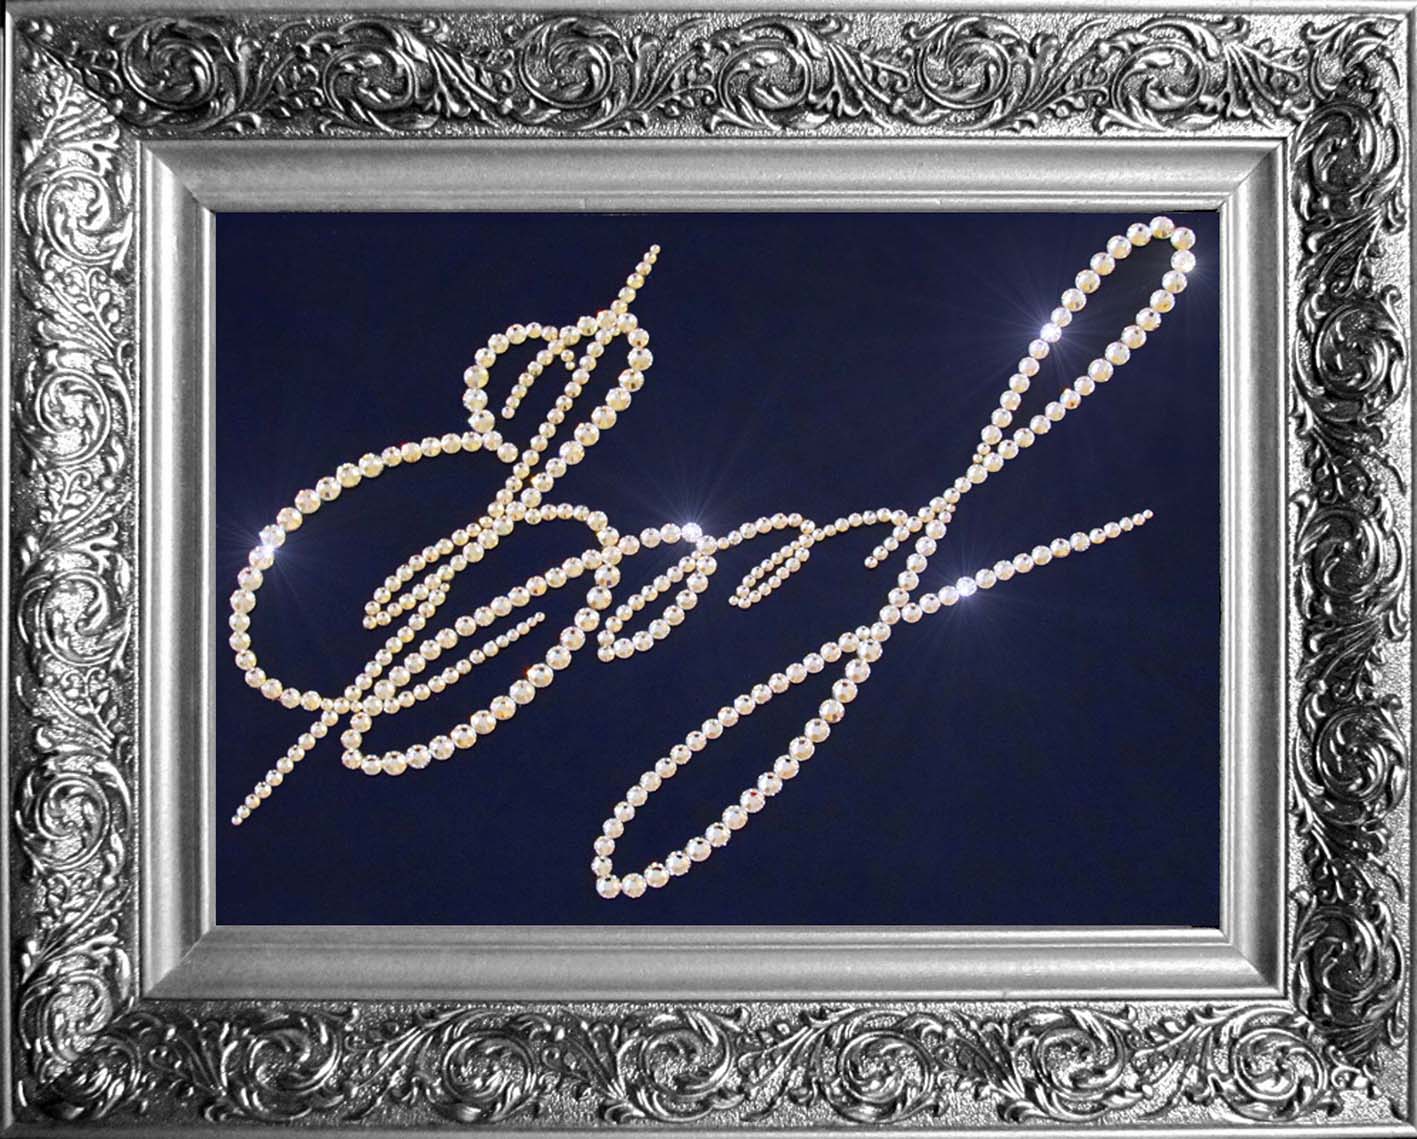 Картина "Подпись - c кристаллами Сваровски" - в золотистой или серебристой раме